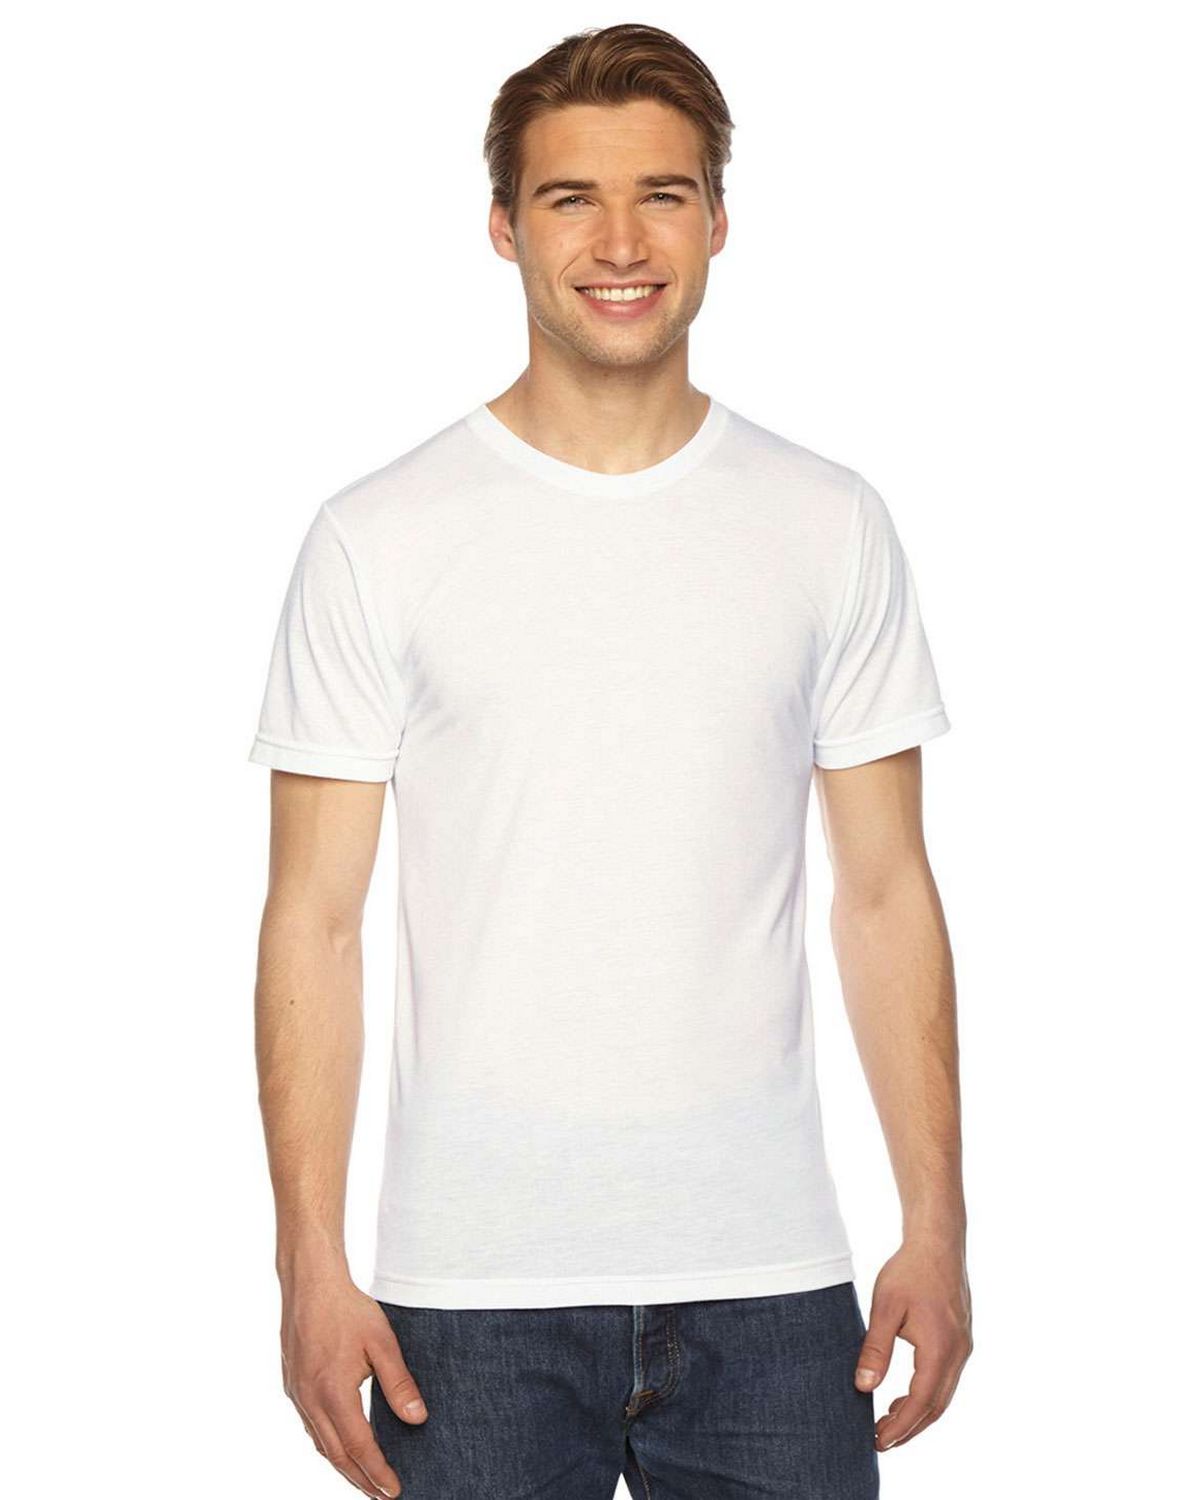 American Apparel PL401W Sublimation Unisex T-Shirt